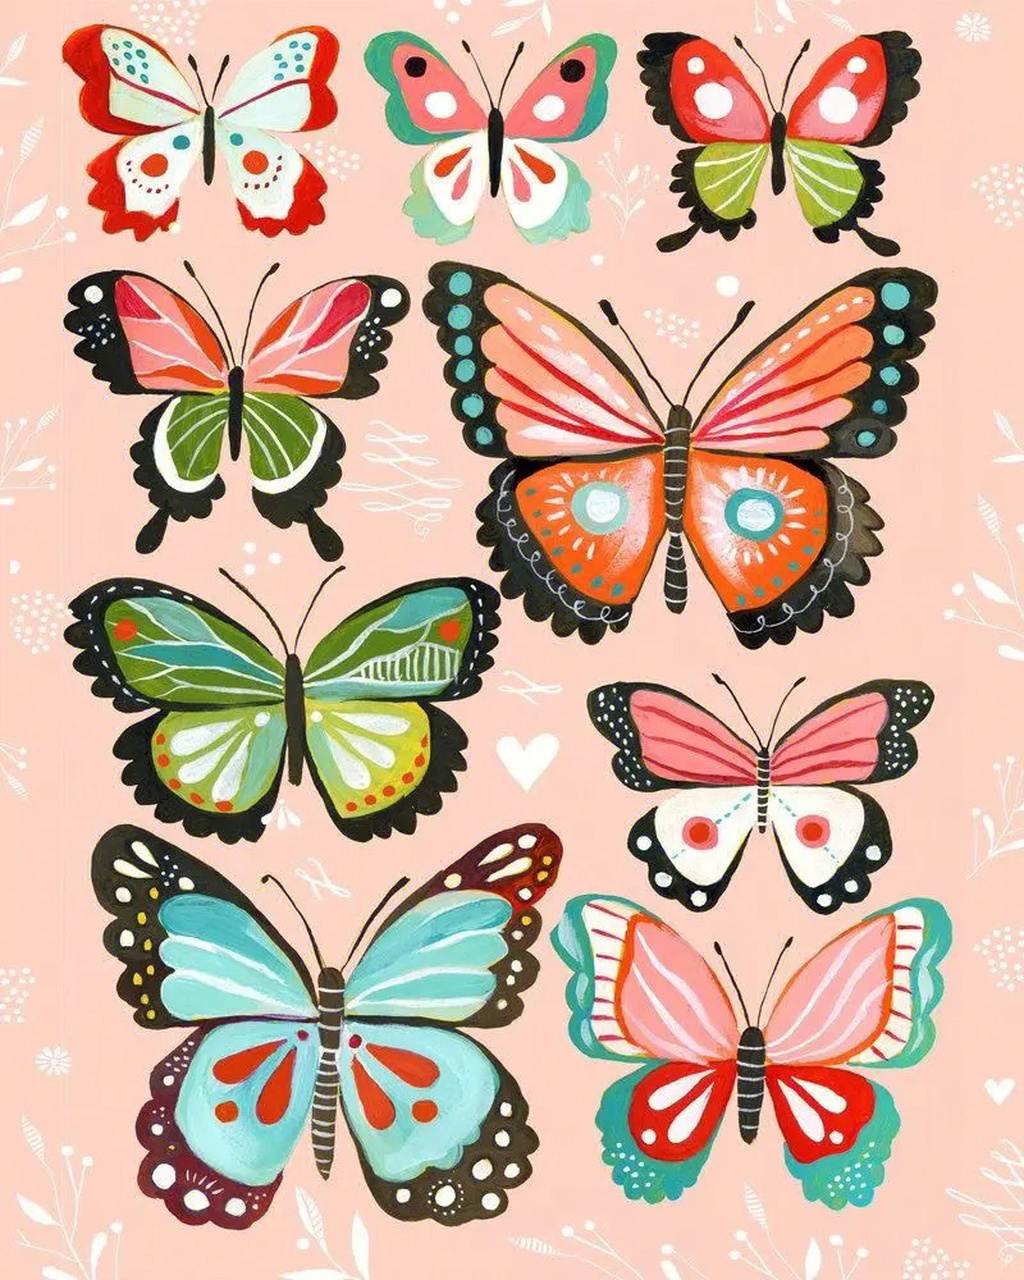 蝴蝶简笔画,插画蝴蝶,蝴蝶素材 可以打印出来剪下来,适合幼龄孩子各种